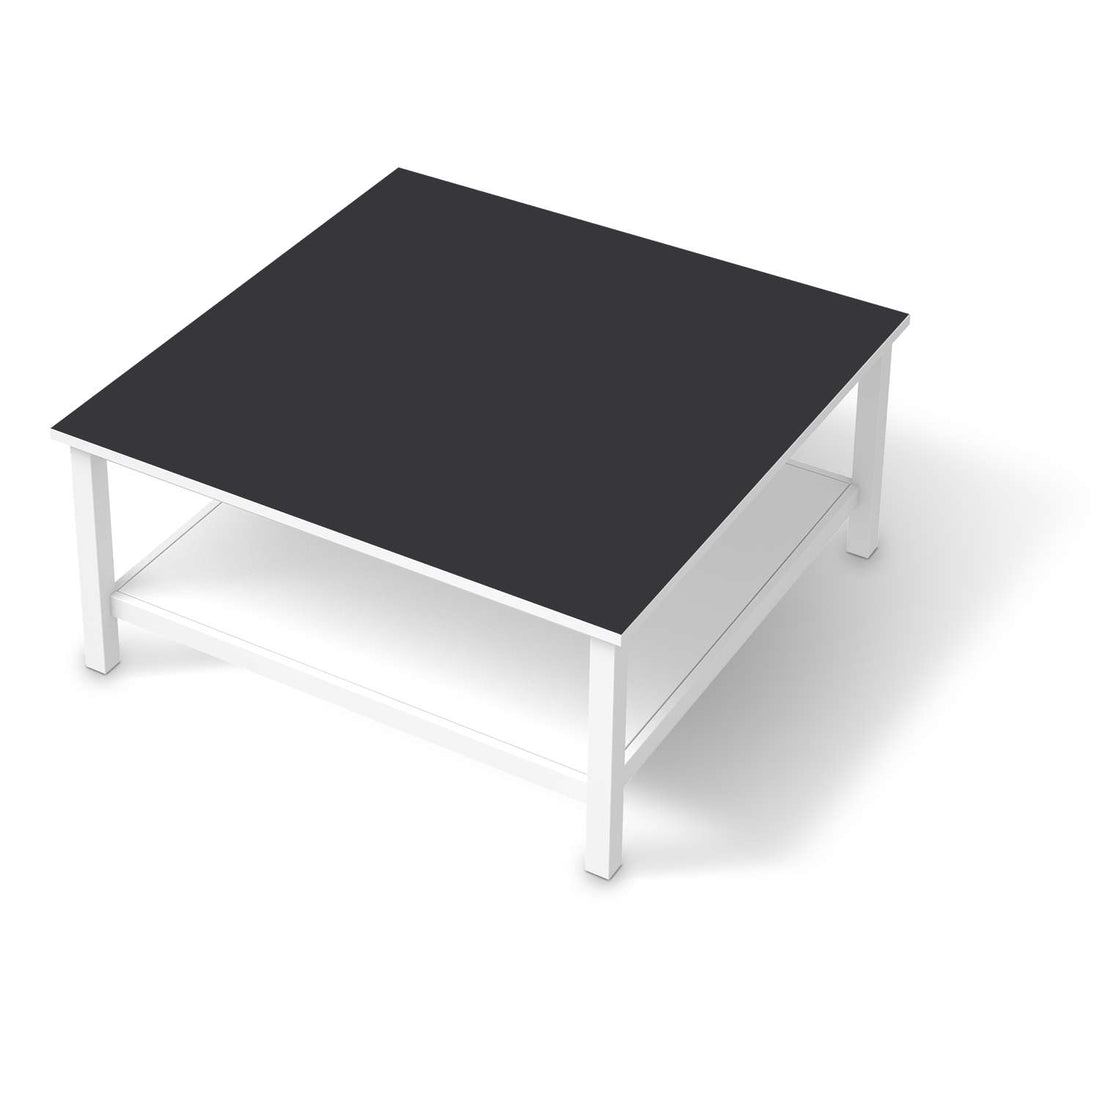 Klebefolie für Möbel Grau Dark - IKEA Hemnes Couchtisch 90x90 cm  - weiss